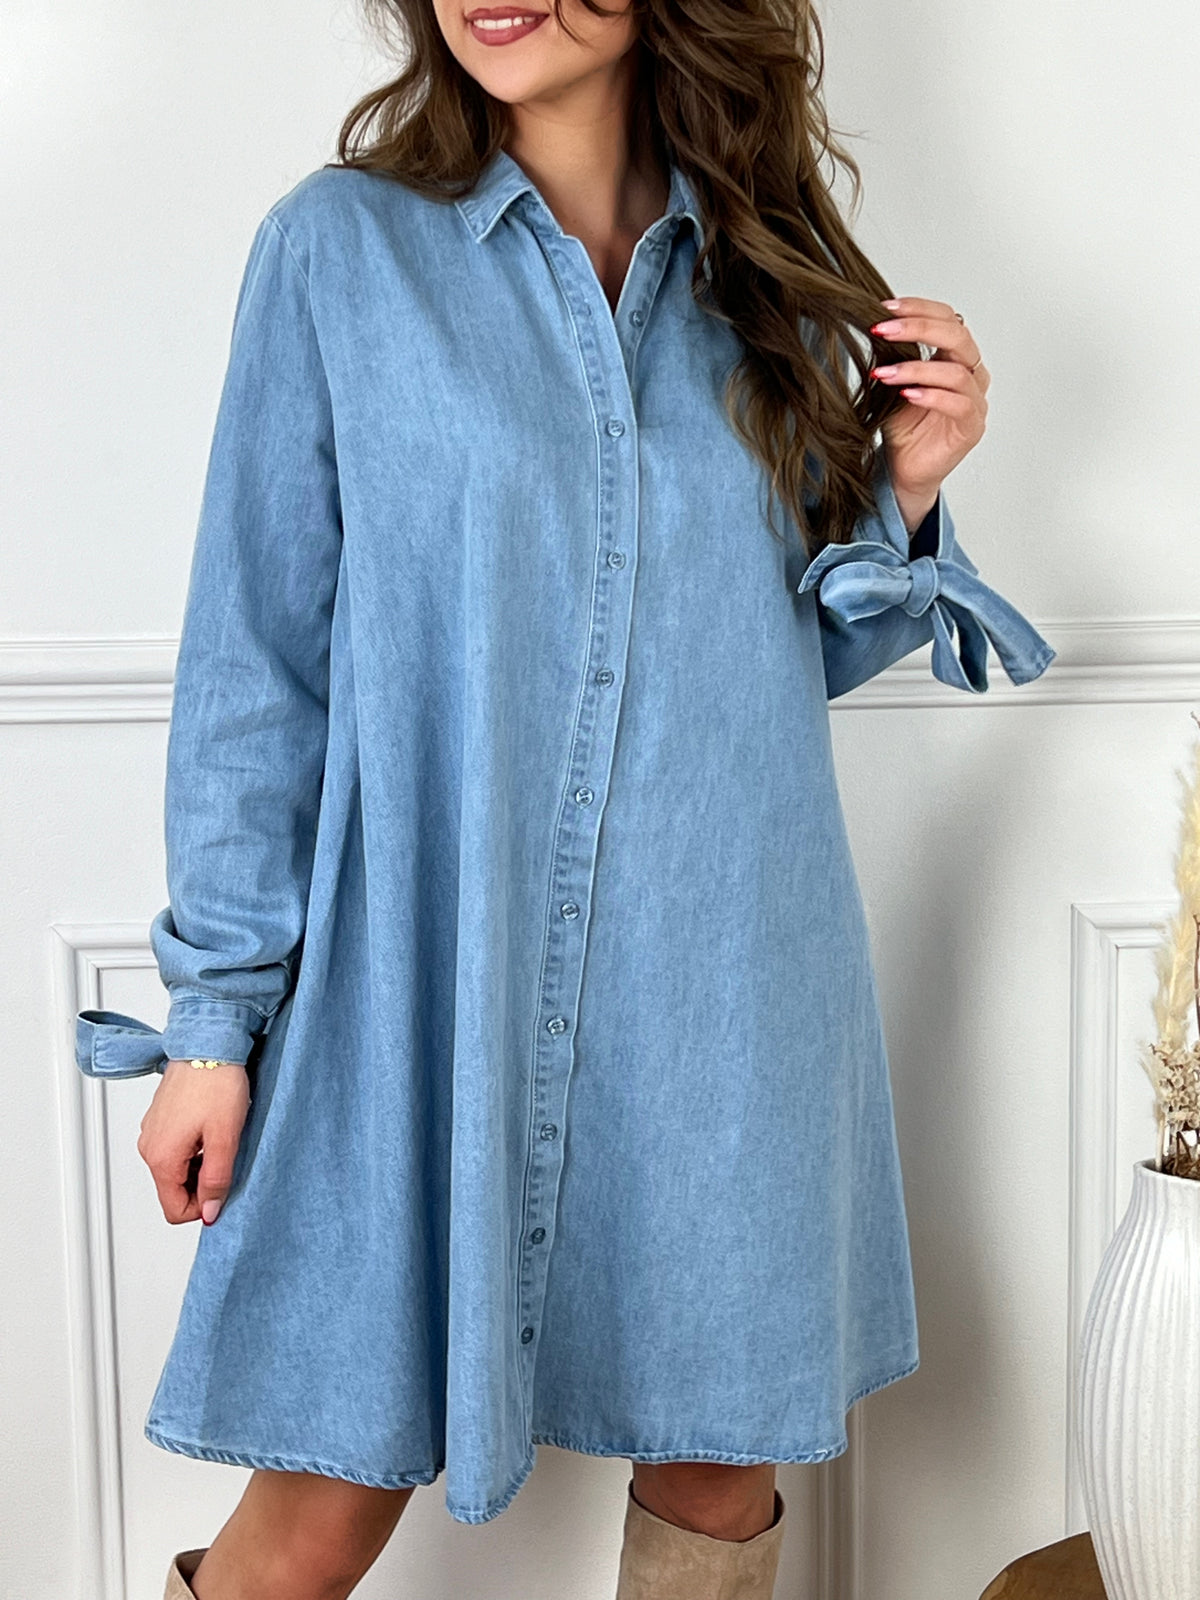 Dynamisez votre garde-robe avec la robe Zoena en jean bleu ! Cette robe courte est parfaite pour toutes les occasions grâce à ses manches longues, ses boutons sur la longueur et ses liens aux manches. Ajoutez une touche de couleur et de style à votre tenue avec cette robe en jean tendance.